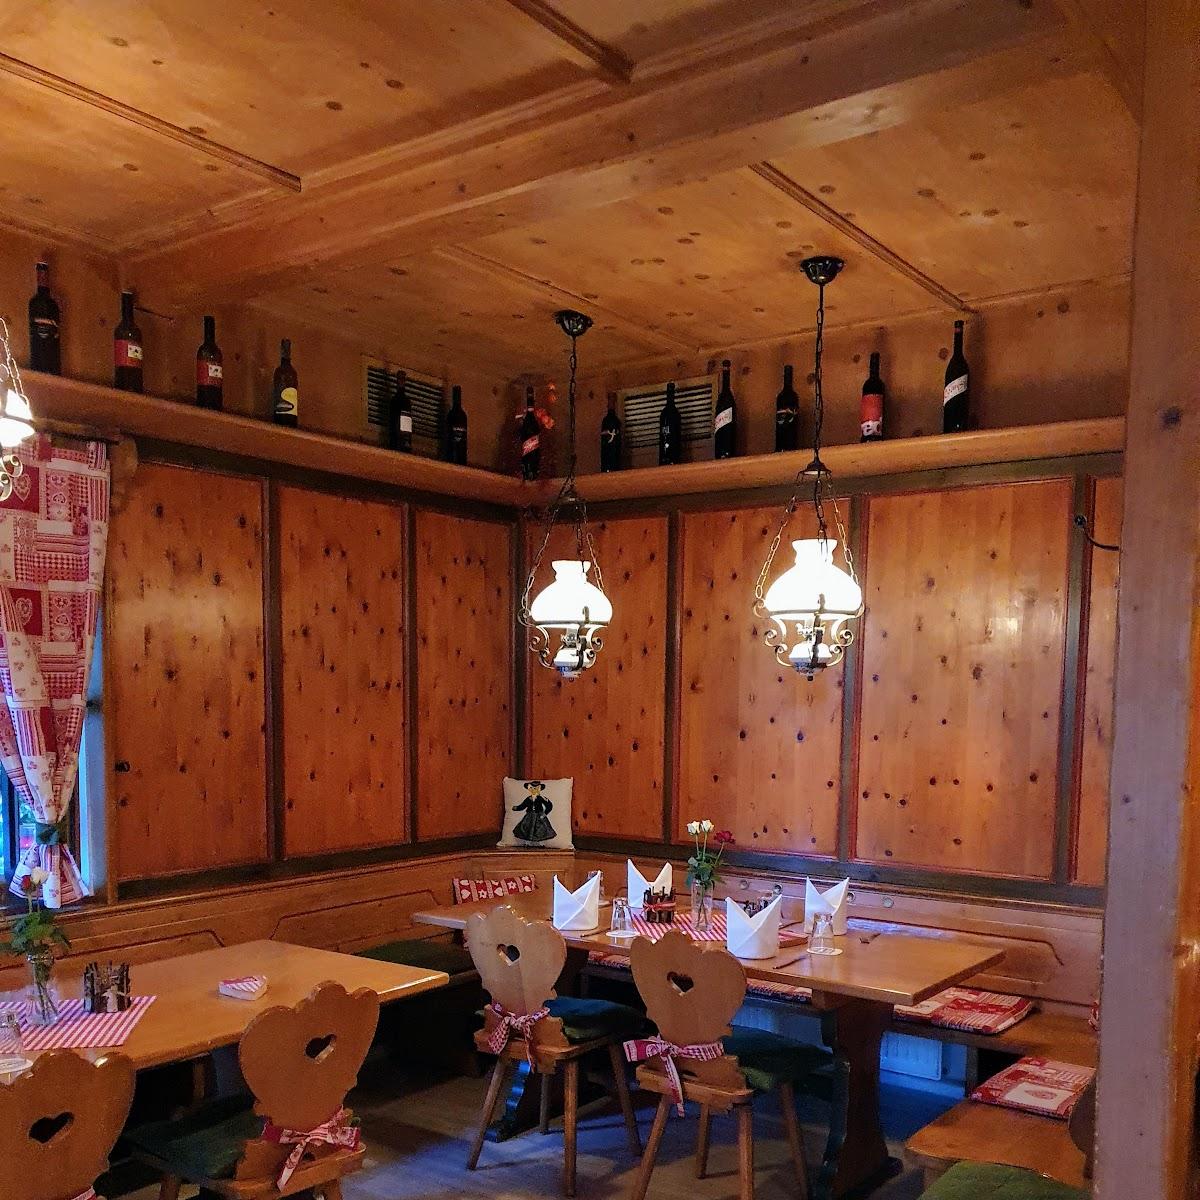 Restaurant "Das KUKOVETZ" in Planegg